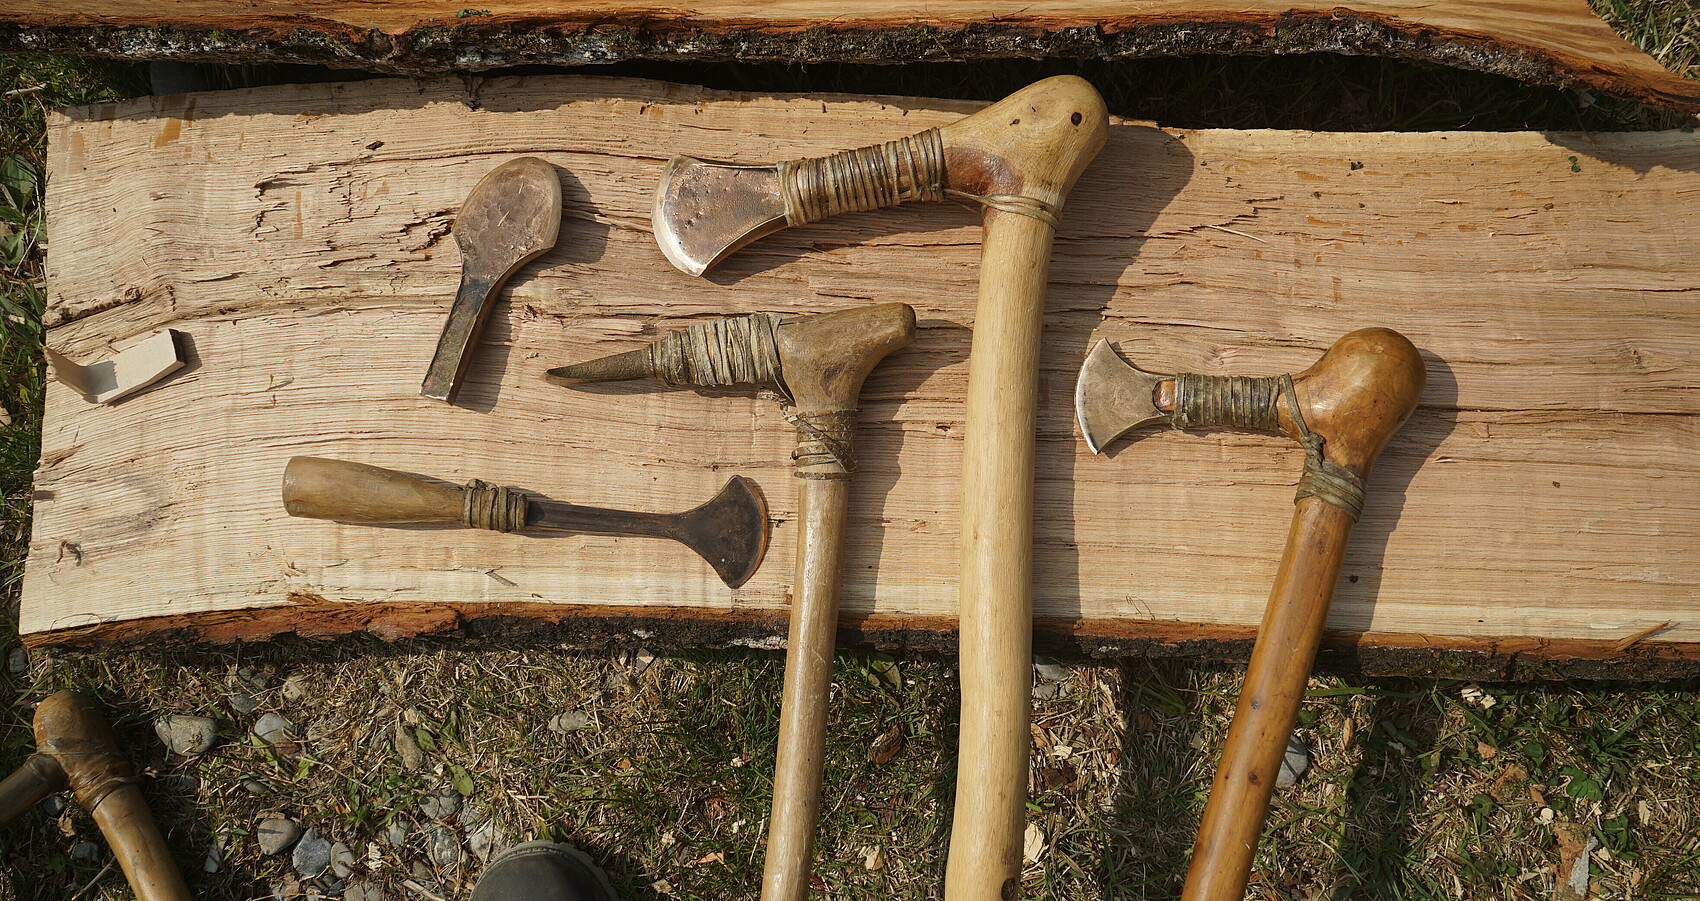 Mit Repliken von bronzezeitlichen Werkzeugen wird erprobt, wie belastbar die Werkzeuge sind, welche Spuren sie in den verschiedenen Holzarten hinterlassen und wie schnell sie nachgeschliffen werden müssen